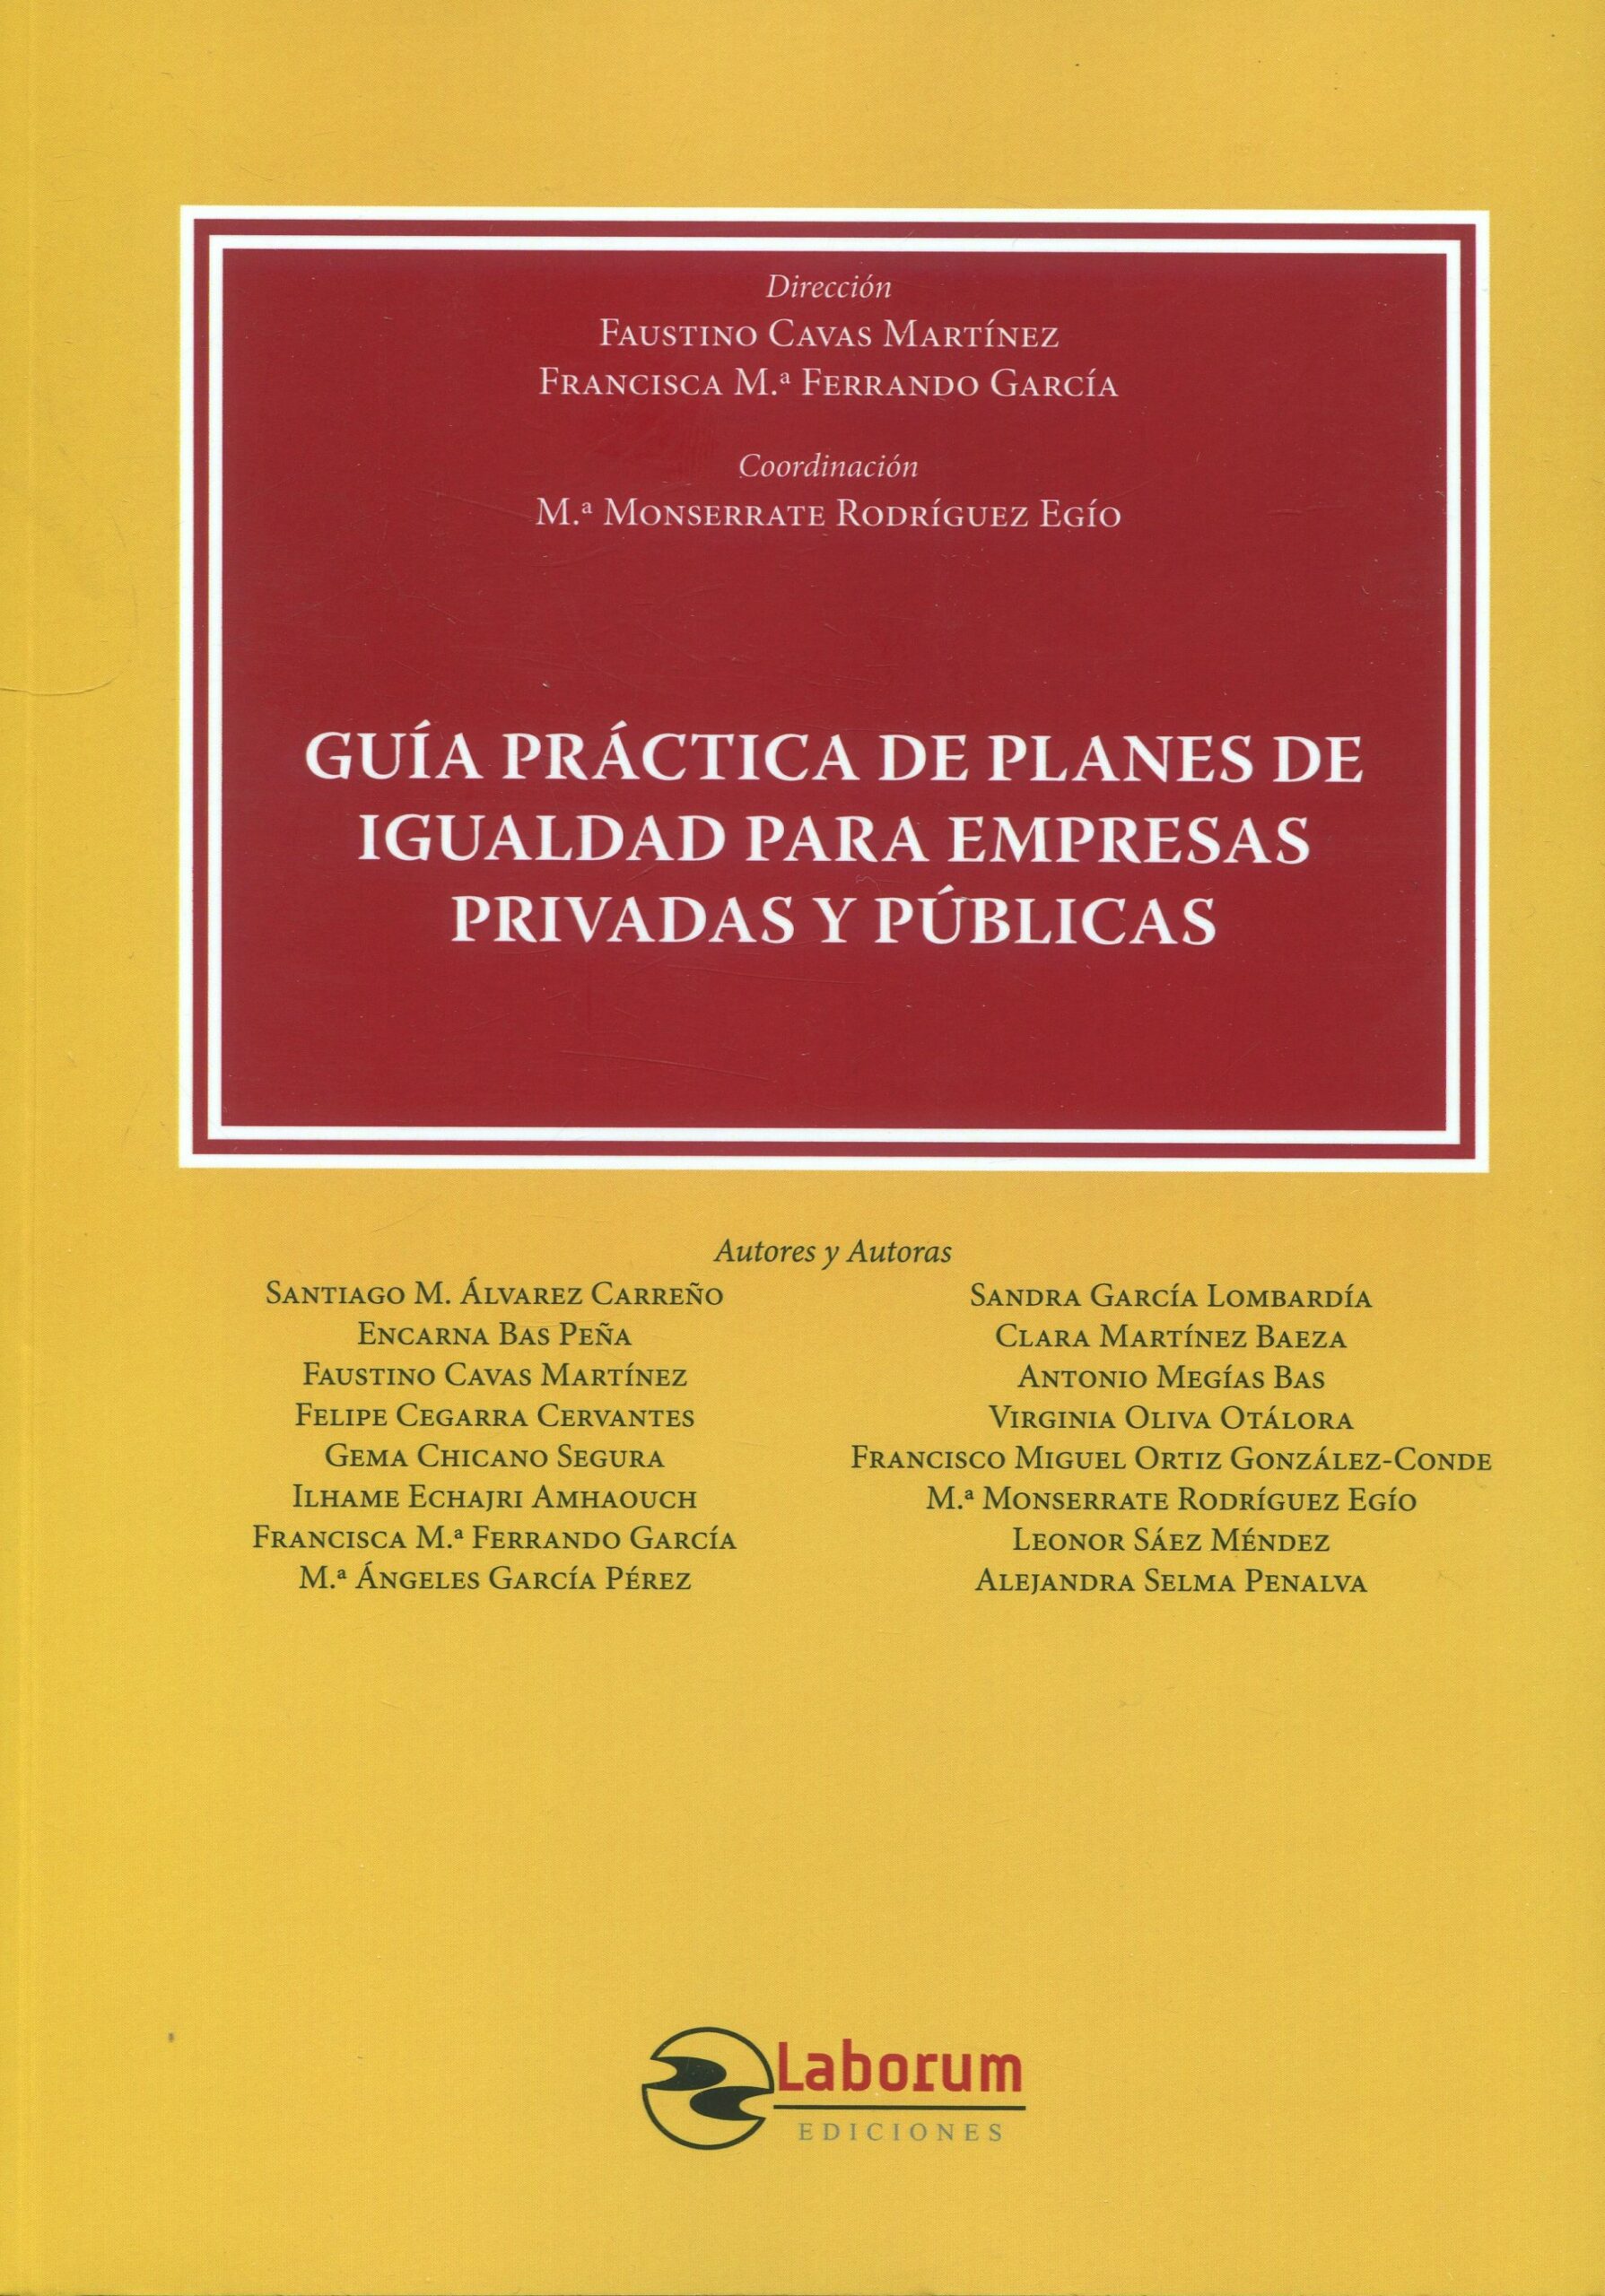 Guía práctica de planes de igualdad para empresas privadas y públicas